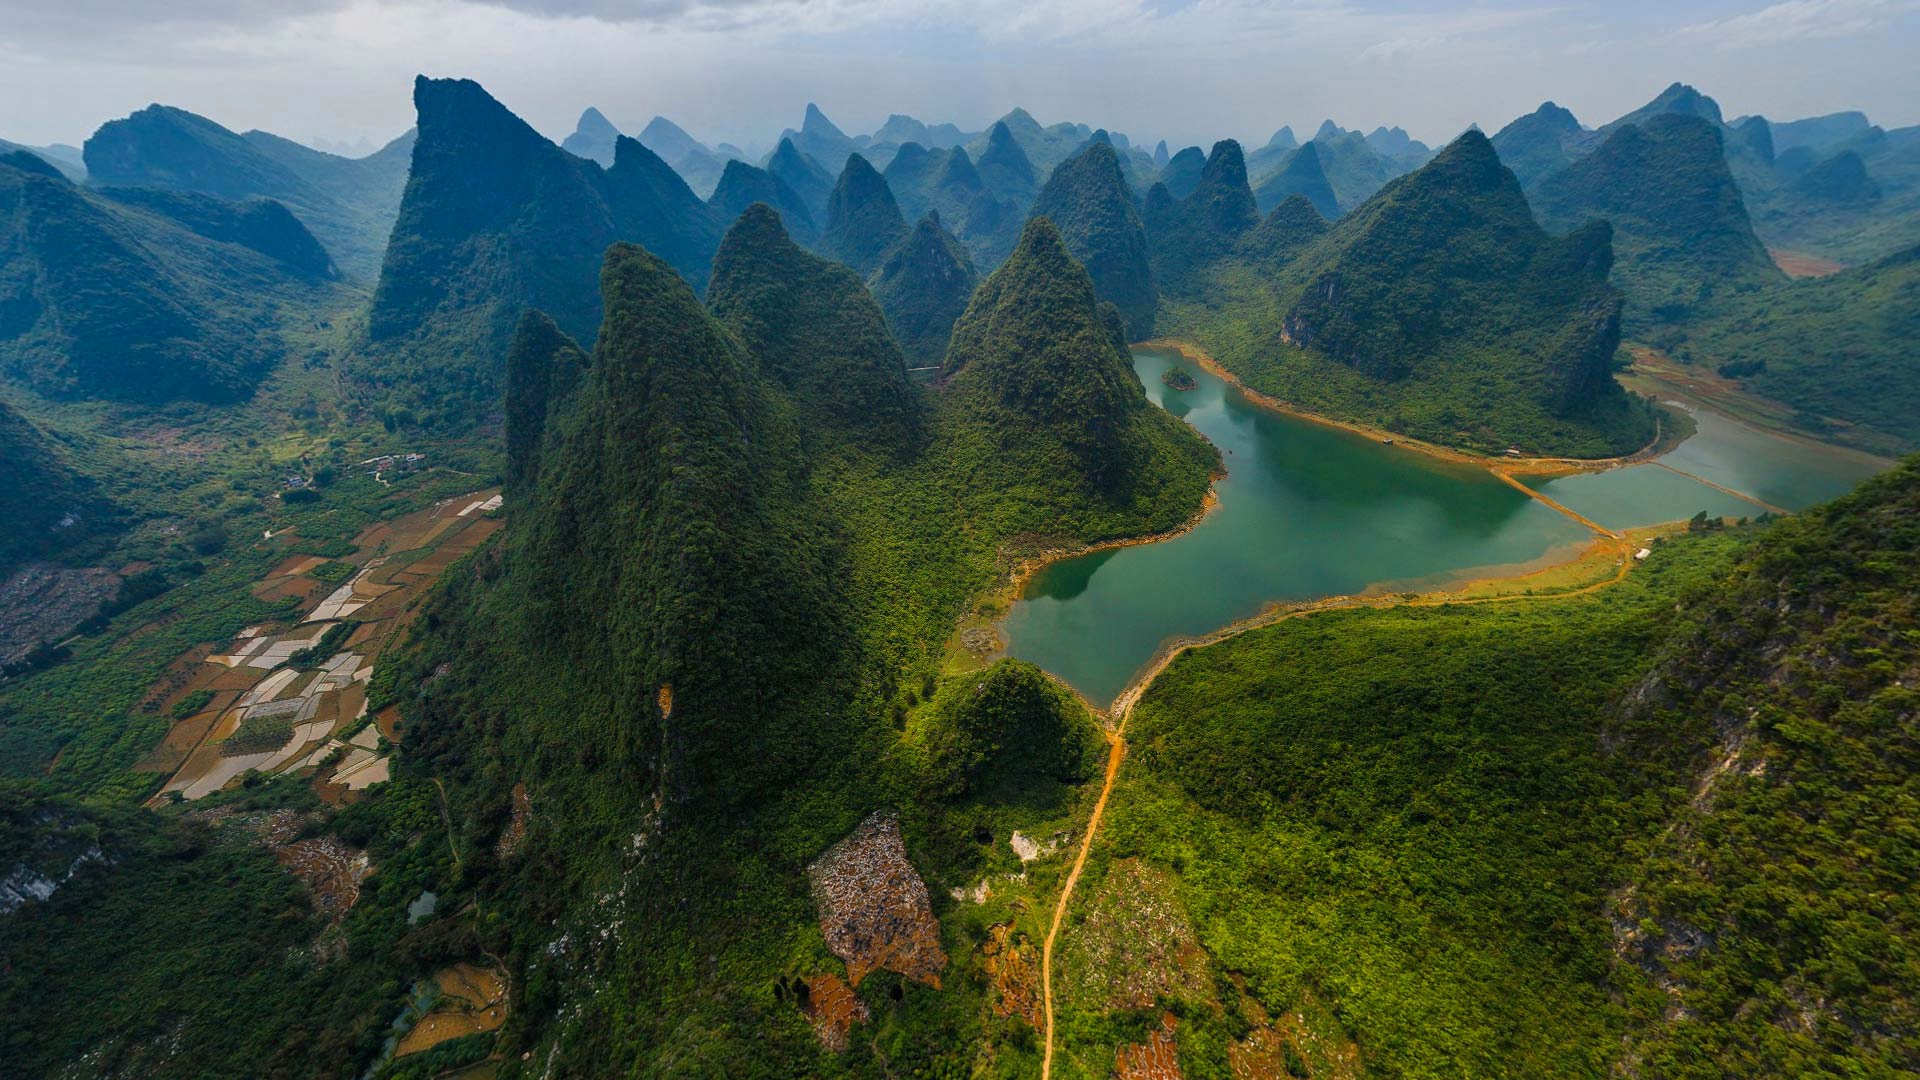 桂林 漓江 山水风景桌面壁纸